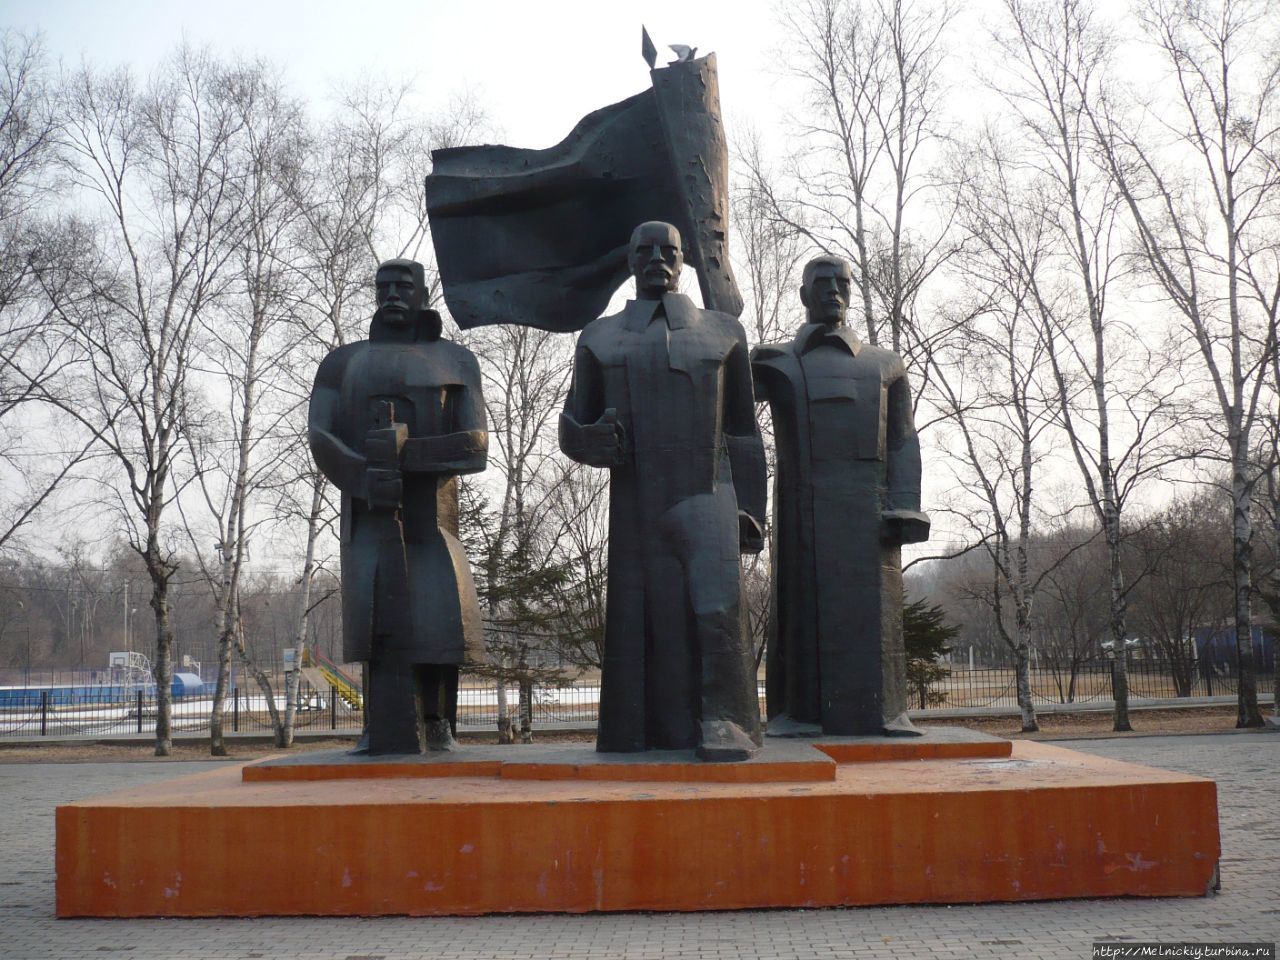 Мемориал воинам Великой Отечественной войны / Memorial to soldiers of the Great Patriotic War